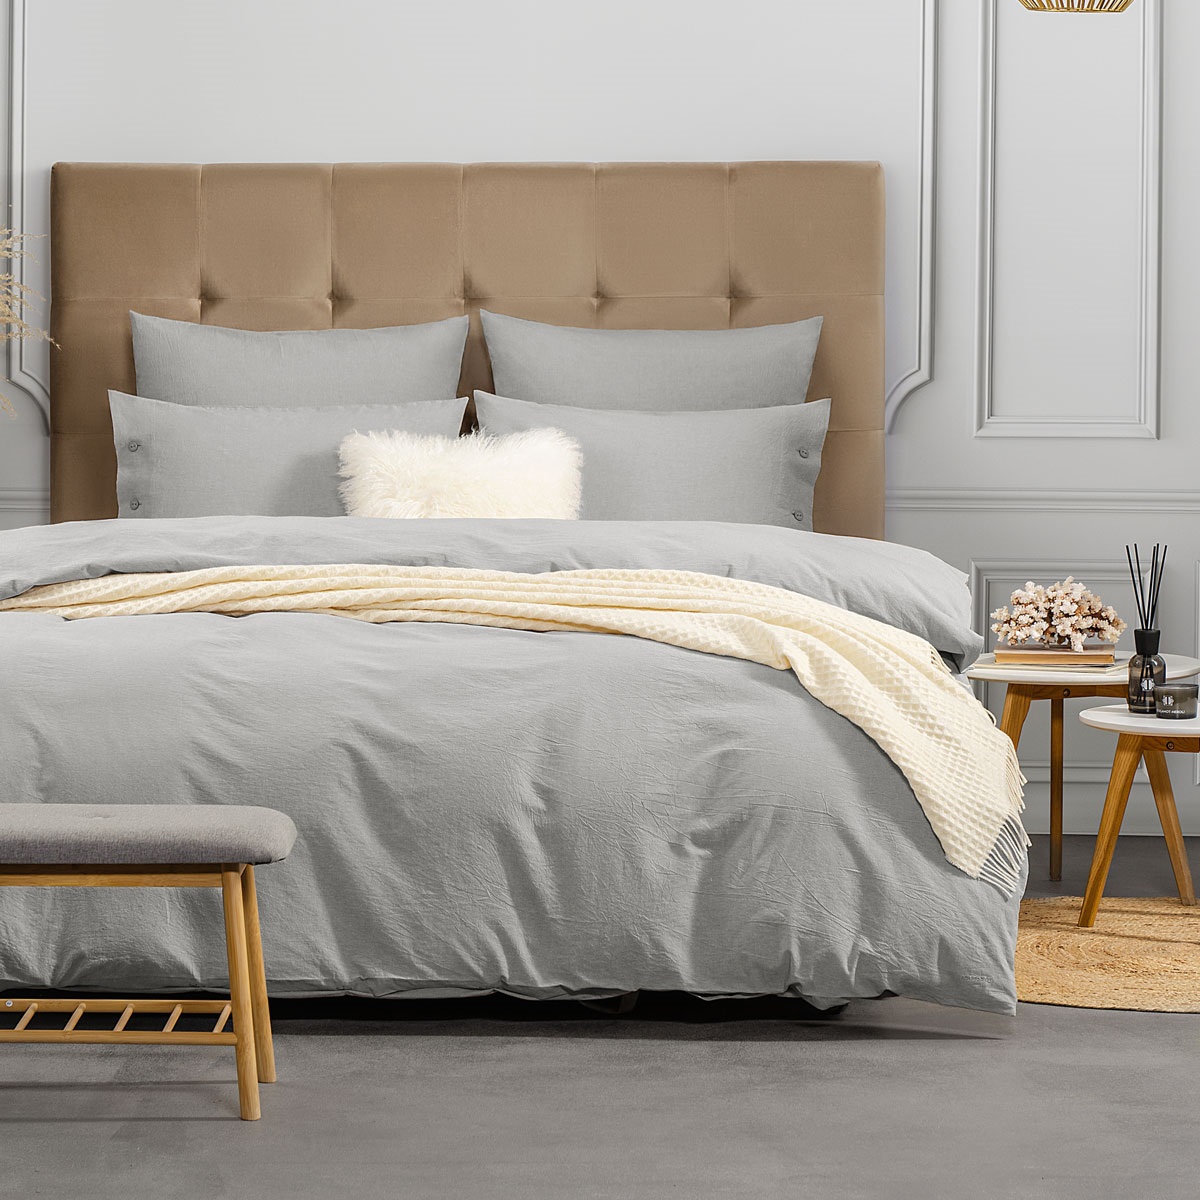 Комплект постельного белья Prime Prive Смоген Полуторный светло-серый, размер Полуторный